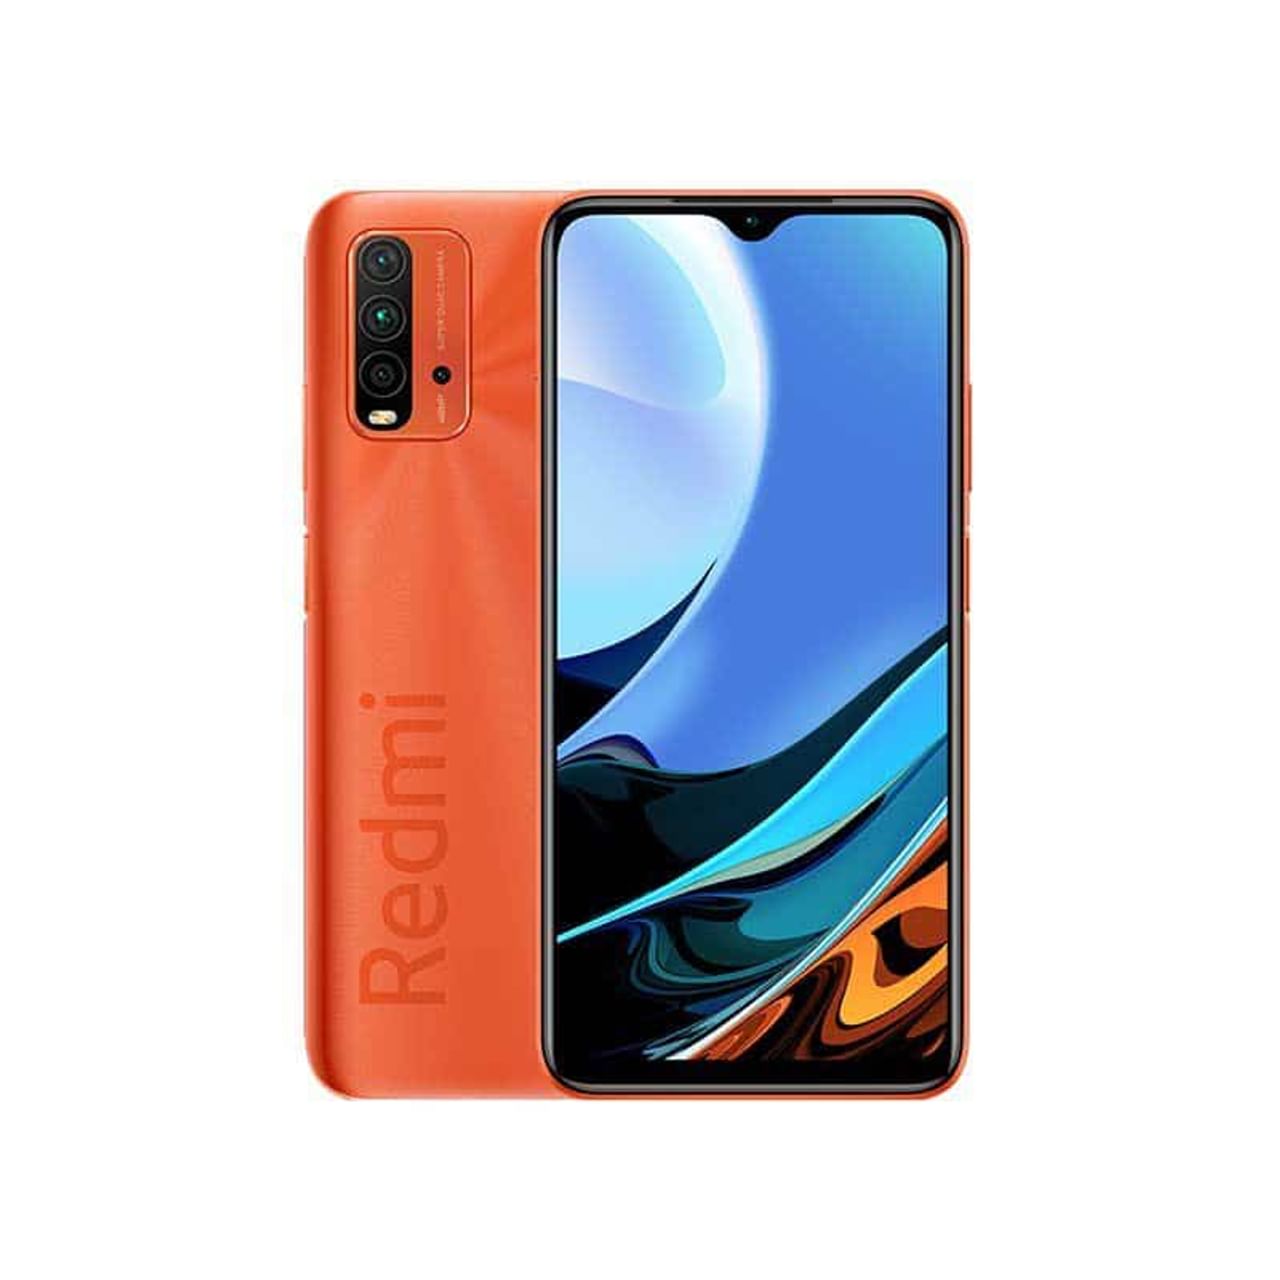 शाओमी रेडमी 9 पावर (Xiaomi redmi 9 power ) - हा एक उत्तम फोन आहे. फोनमध्ये ऑक्टा कोअर (2 GHz, Quad core, Kryo 260 + 1.8 GHz, Quad core, Kryo 260) प्रोसेसर आहे. P-Sensor, E-Campass सेन्सर देखील दिलेले आहेत. कनेक्टिव्हिटी वैशिष्ट्यांबद्दल बोलायचे तर फोन 4G ला सपोर्ट करतो. याशिवाय GPS, Bluetooth, Wi-Fi आणि OTG सारखे फीचर्स देखील आहेत. Xiaomi Redmi 9 Power ची भारतात किंमत 11999 आहे.